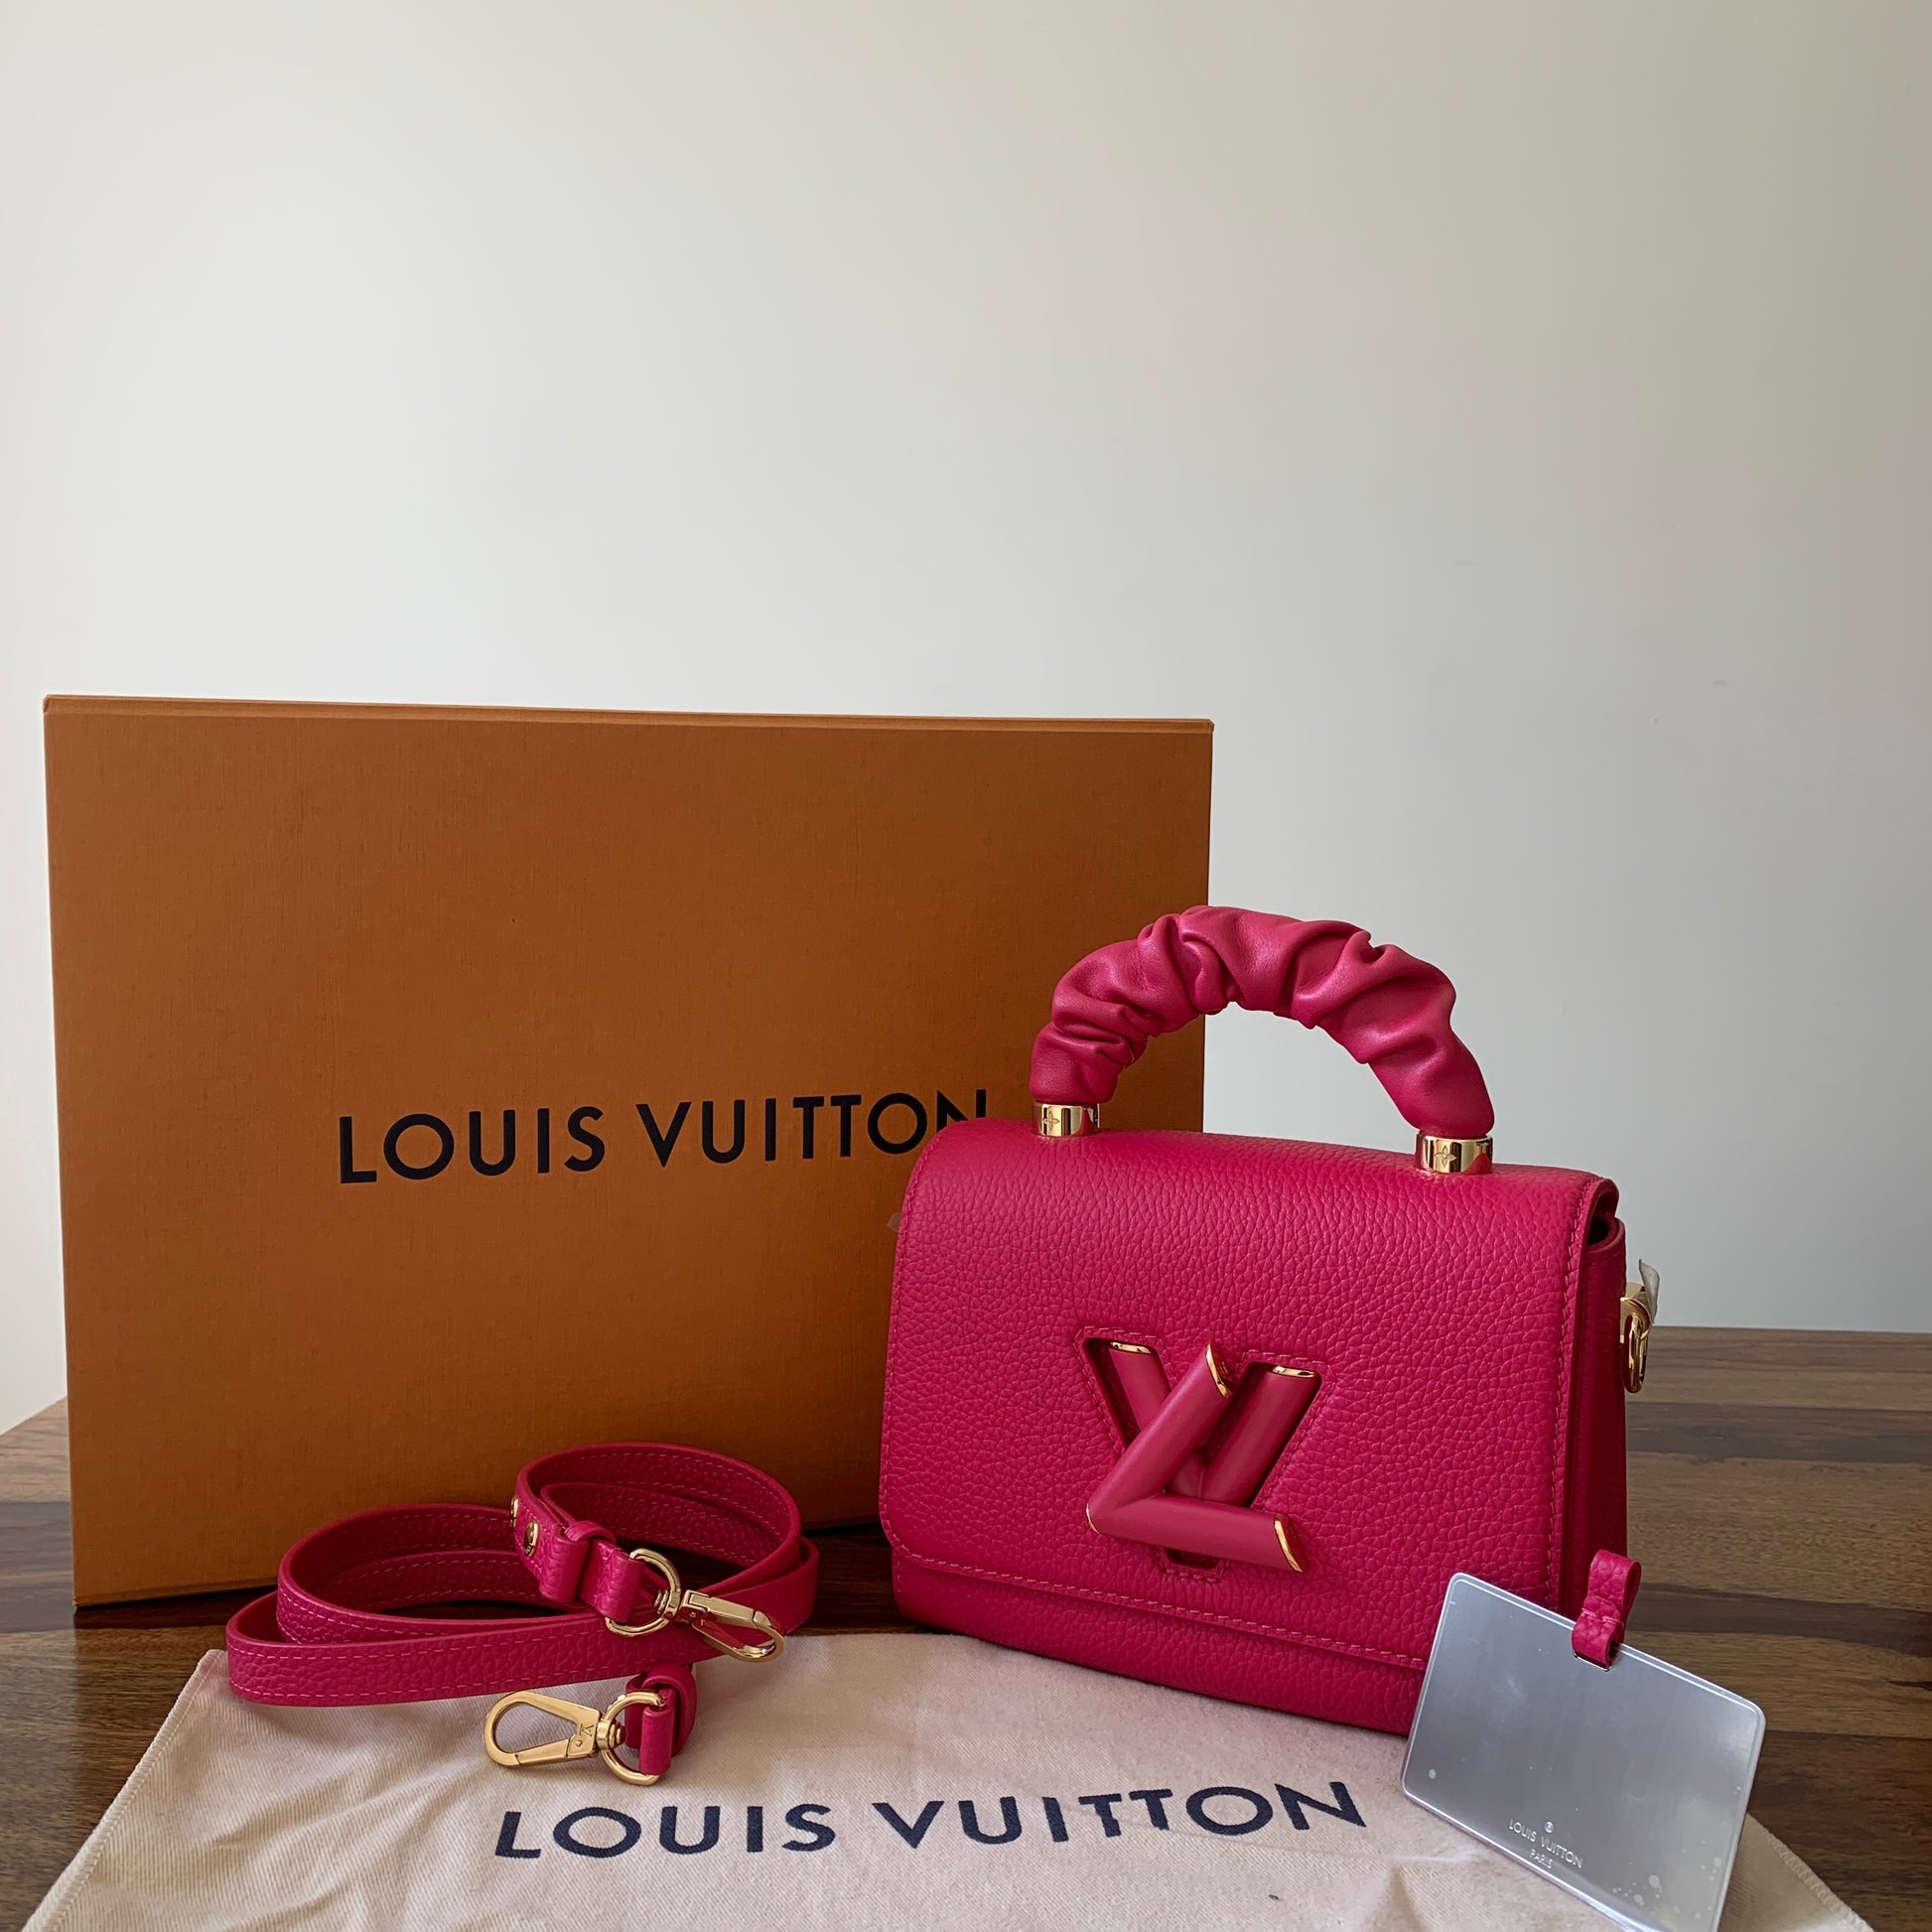 Louis Vuitton Twist One Handle PM Black Taurillon